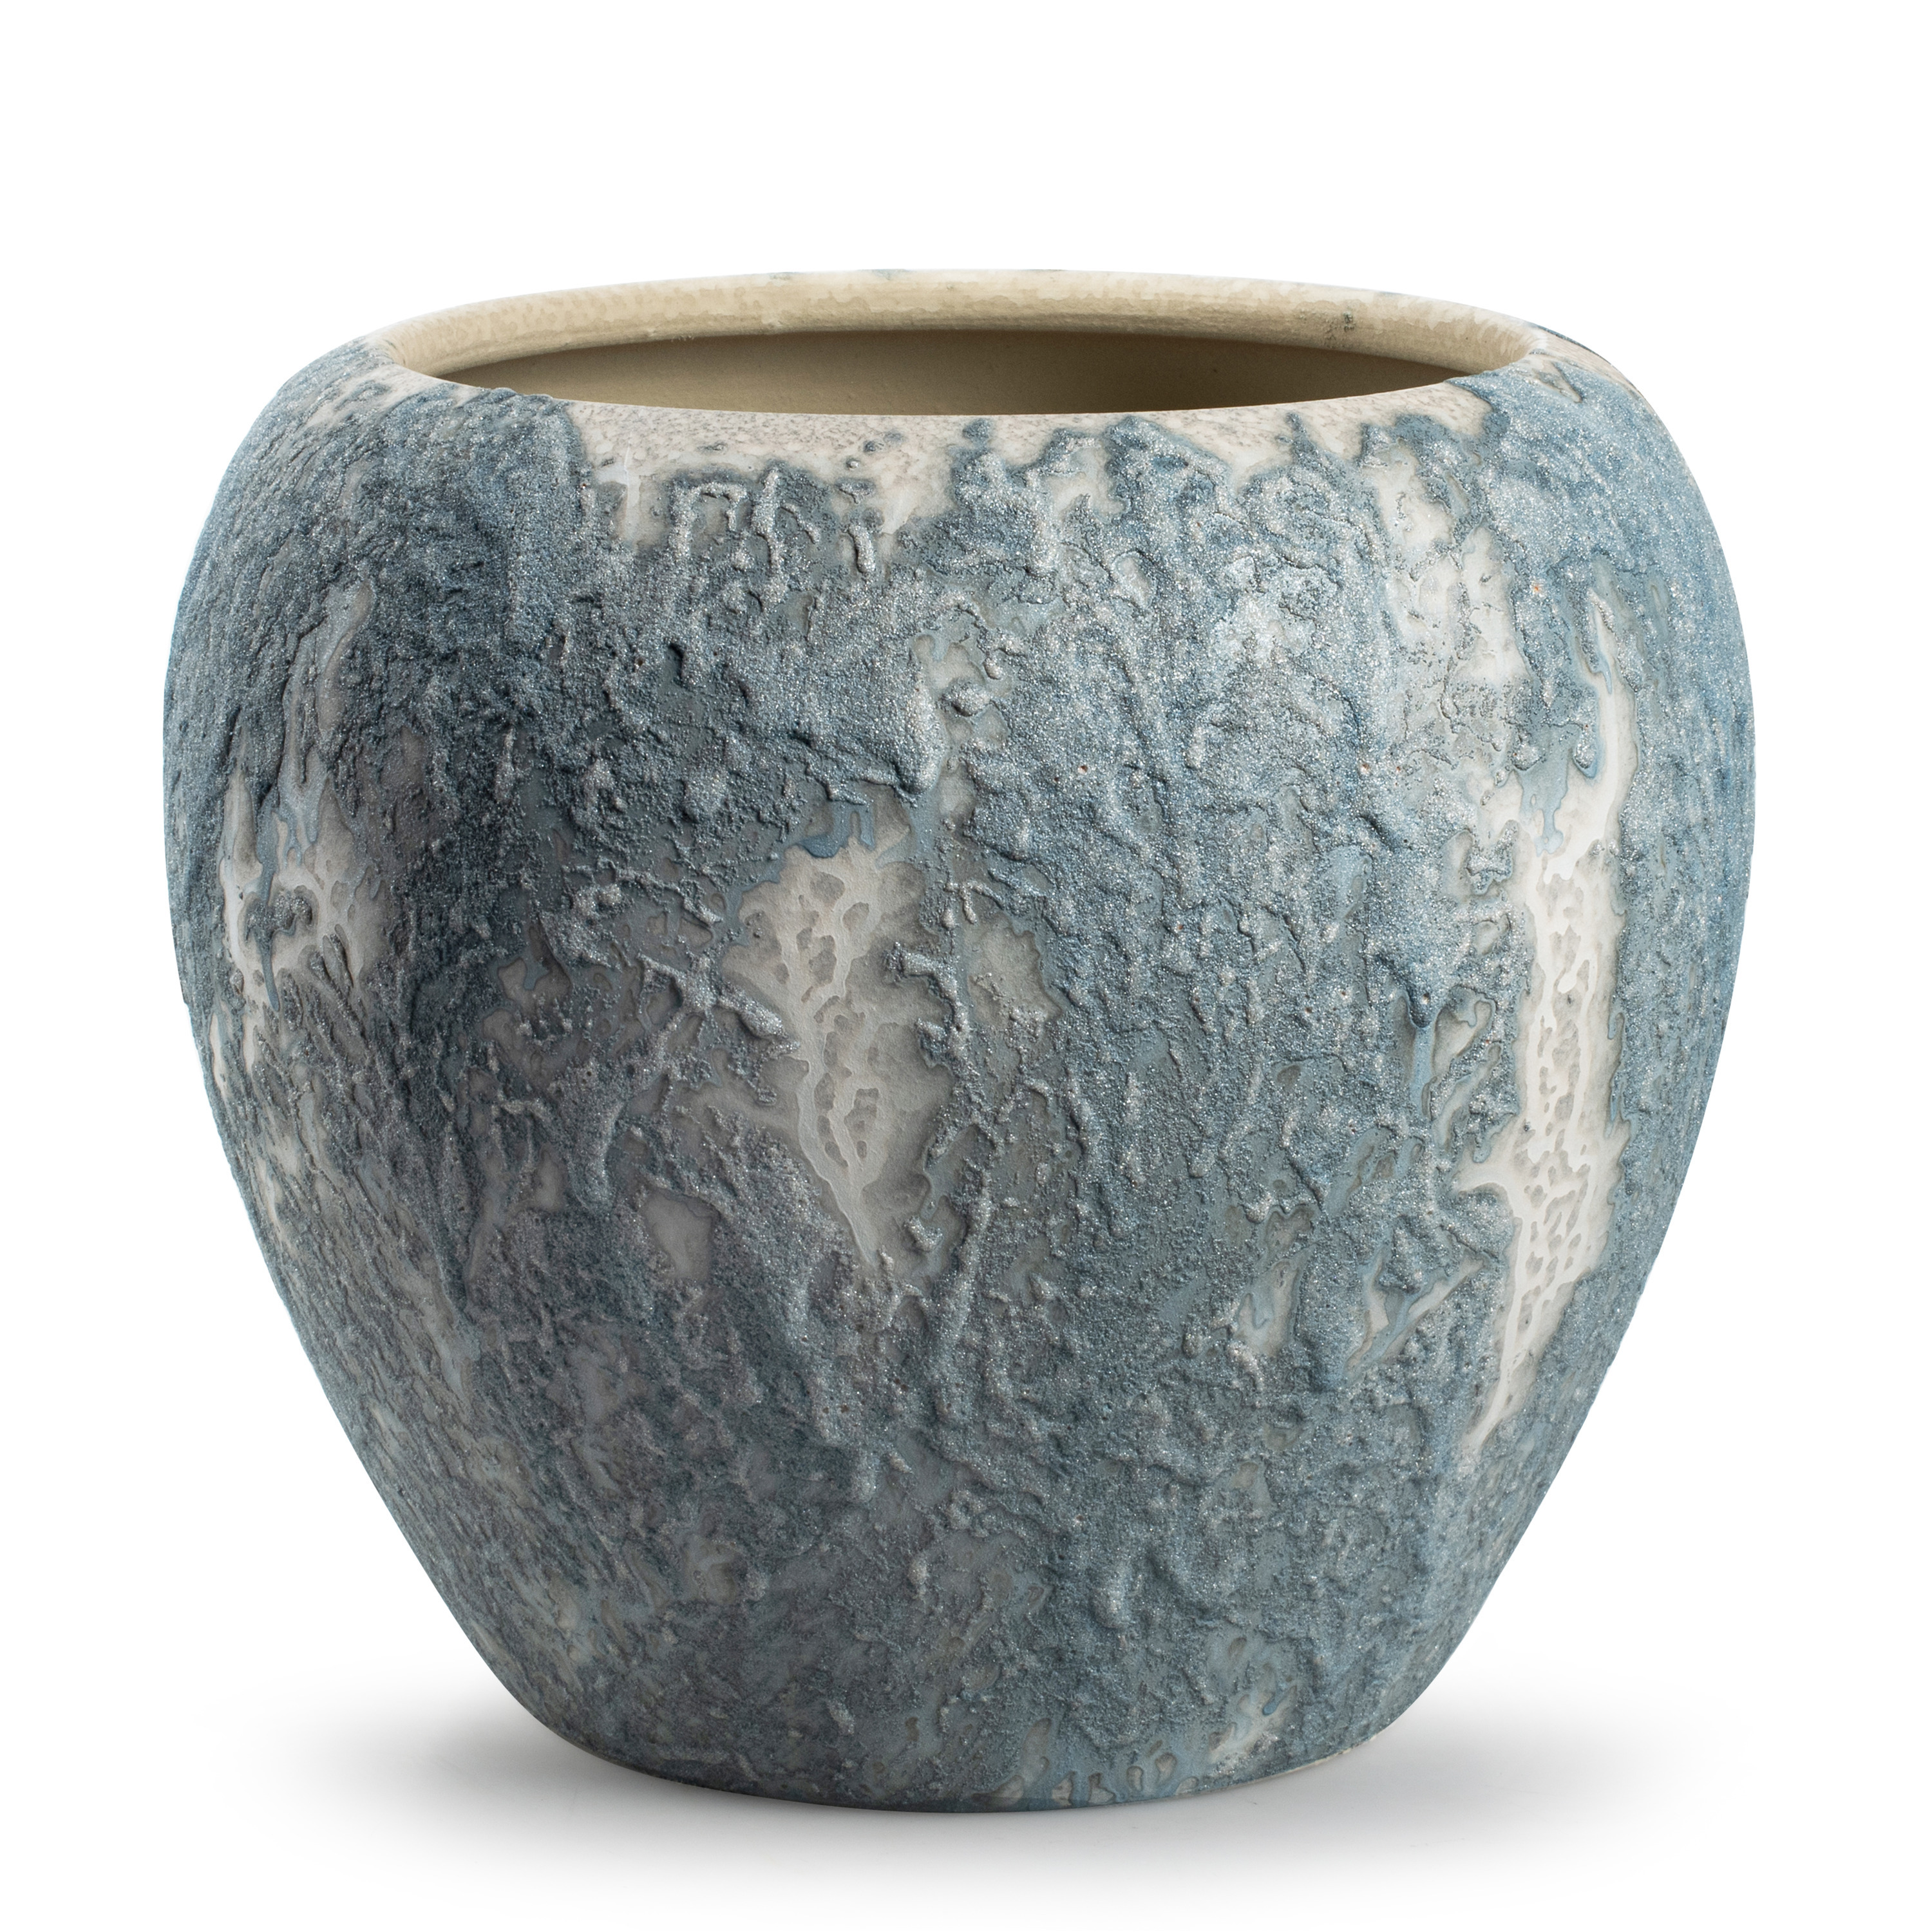 Jodeco Plantenpot/bloempot Marble - wit/ijsblauw - keramiek - D24 x H22 cm -